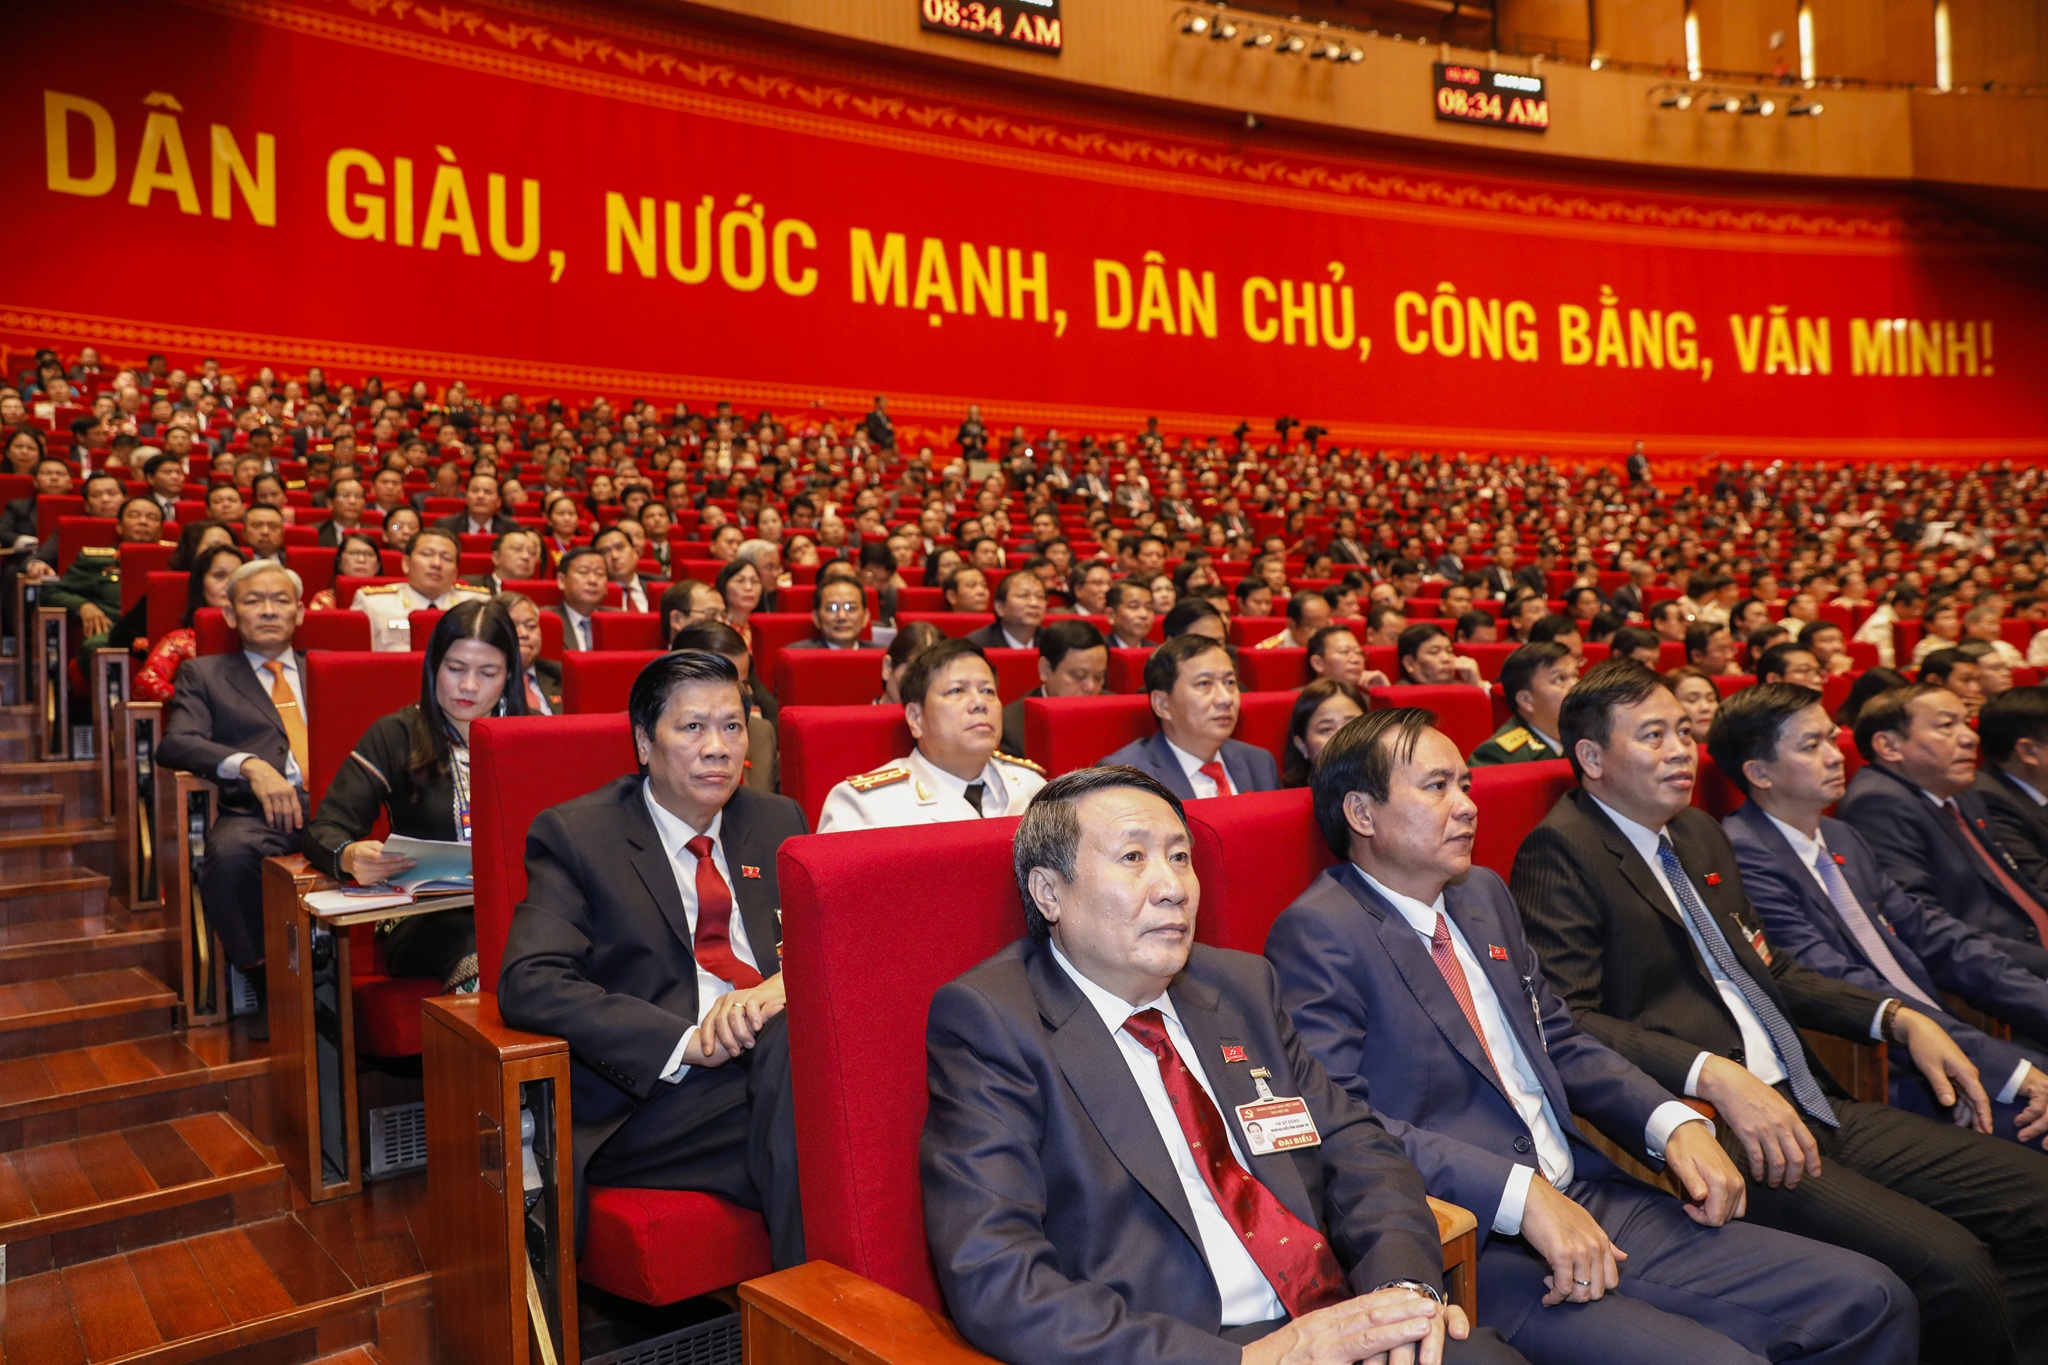 Toàn cảnh phiên khai mạc Đại hội Đại biểu toàn quốc lần thứ XIII của Đảng - 7